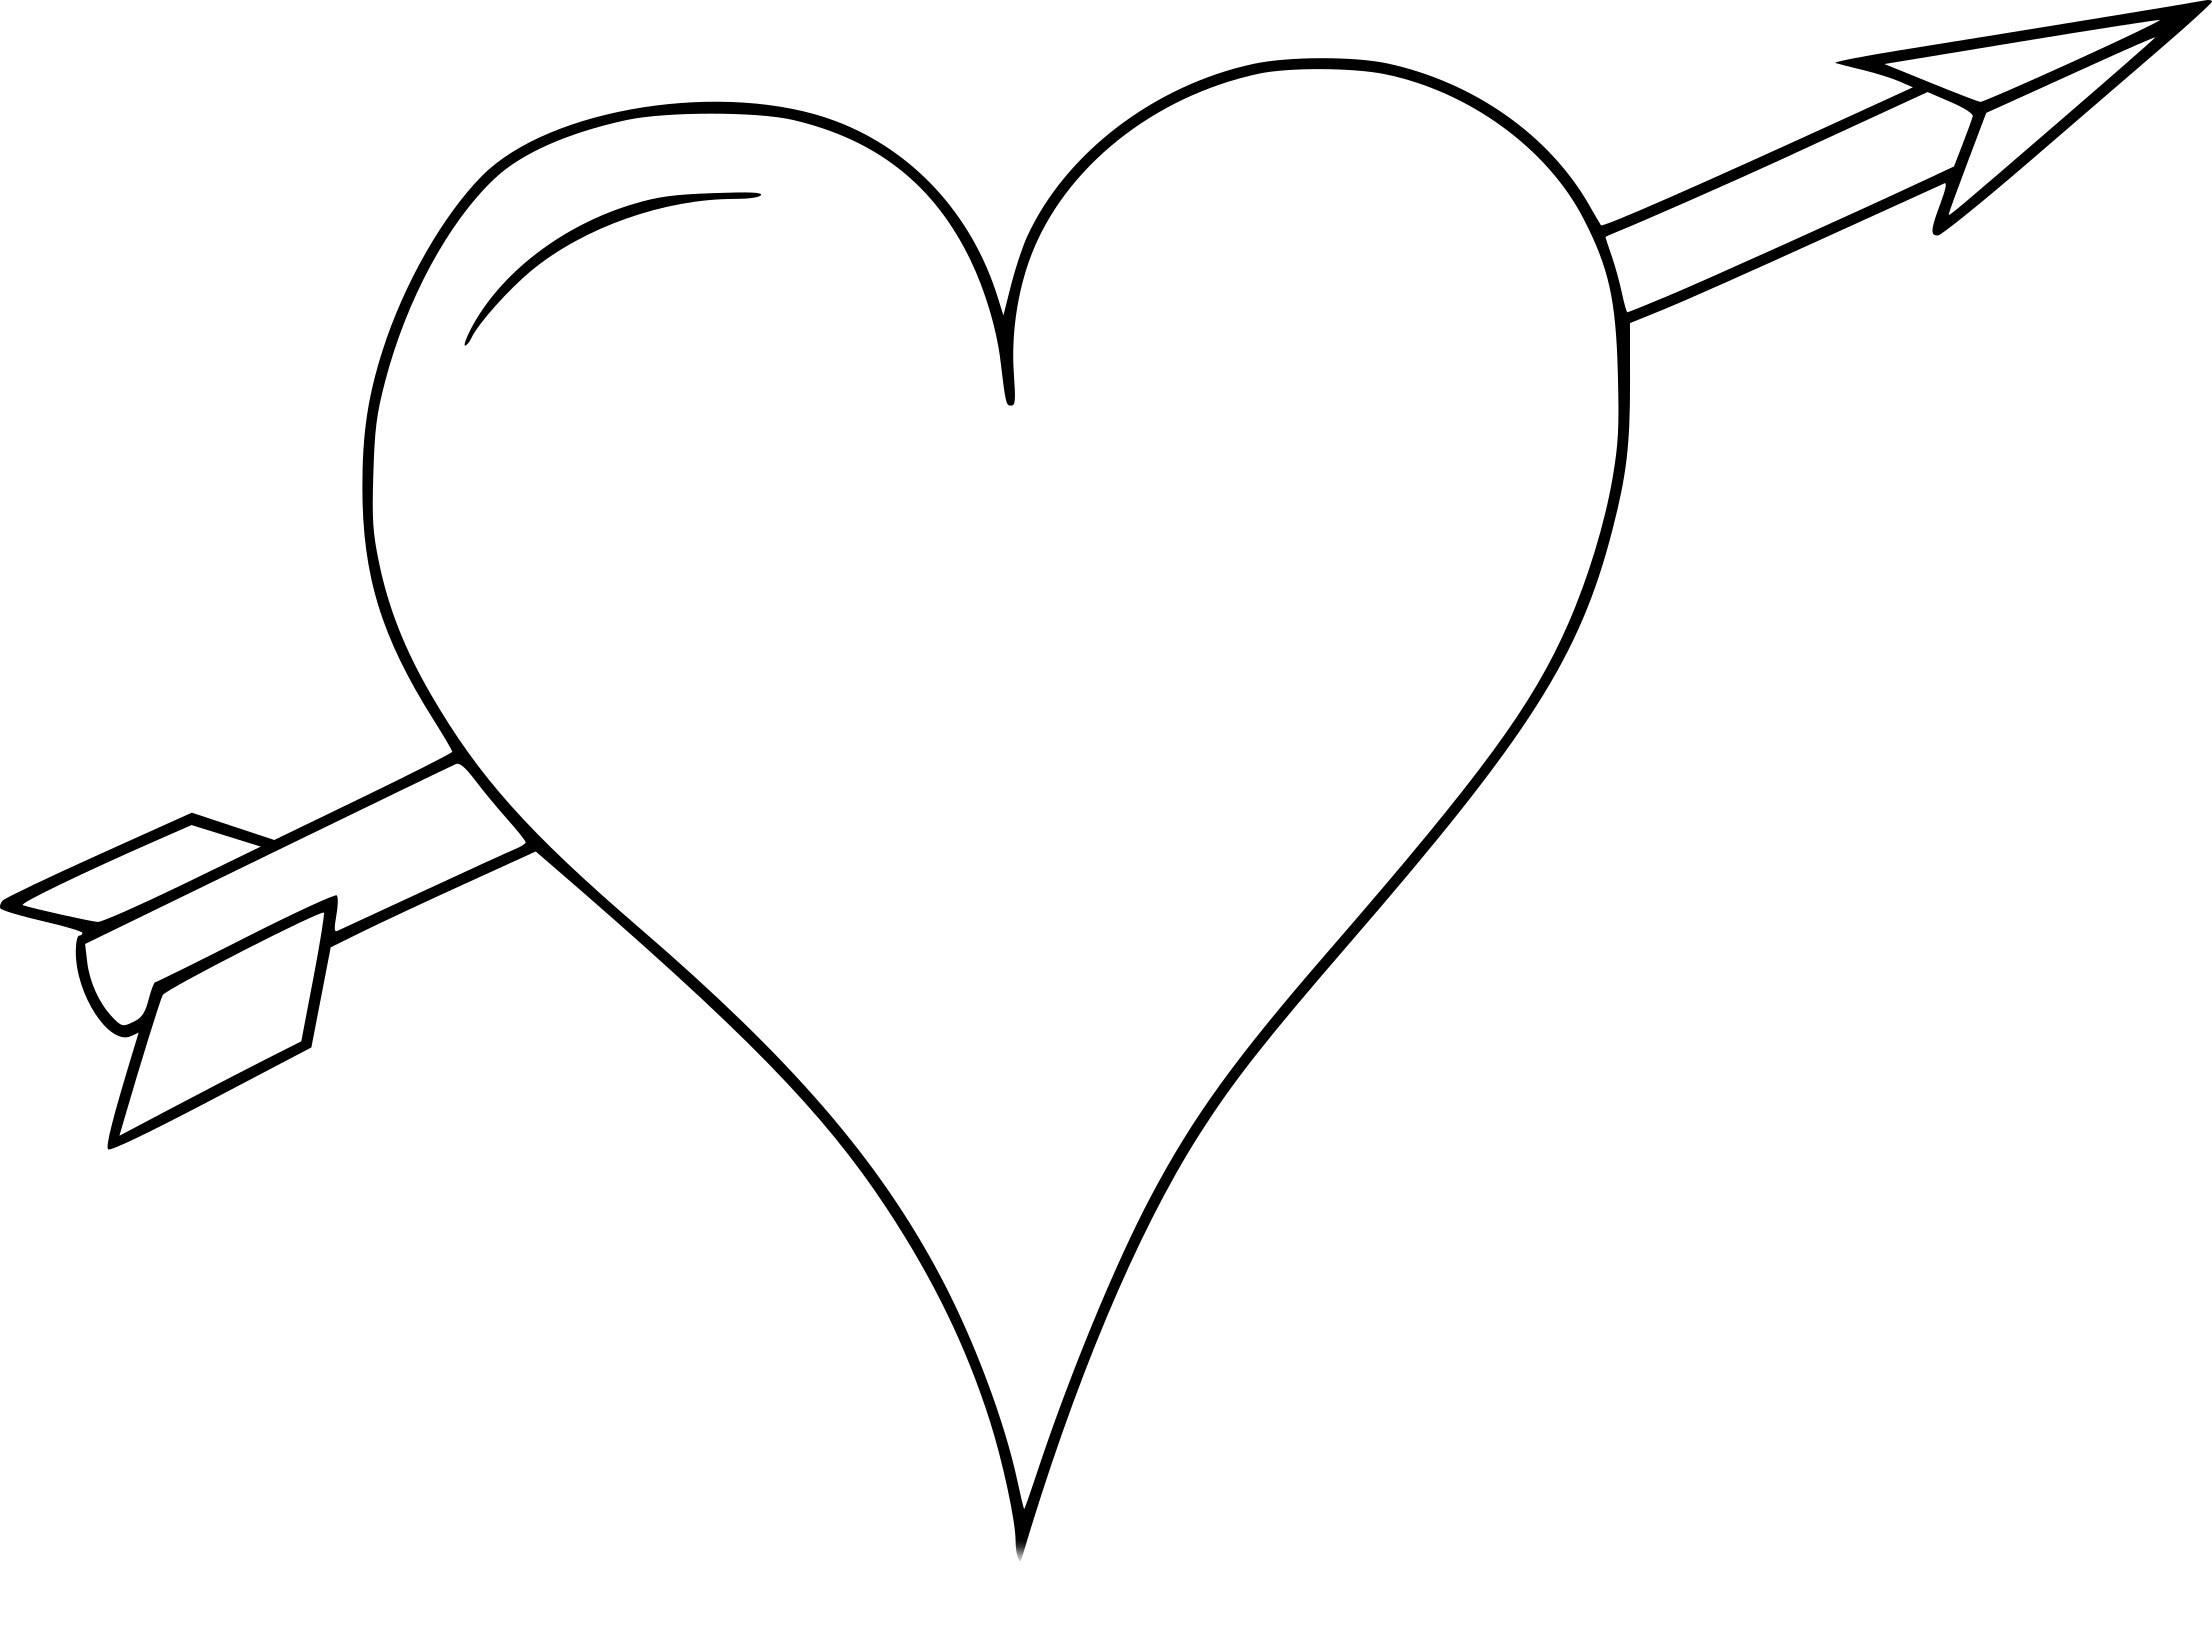 Рисунок сердечко распечатать. Раскраска сердечко. Сердце со стрелой. Сердечки не Раскрашенные. Сердечки для рисования.